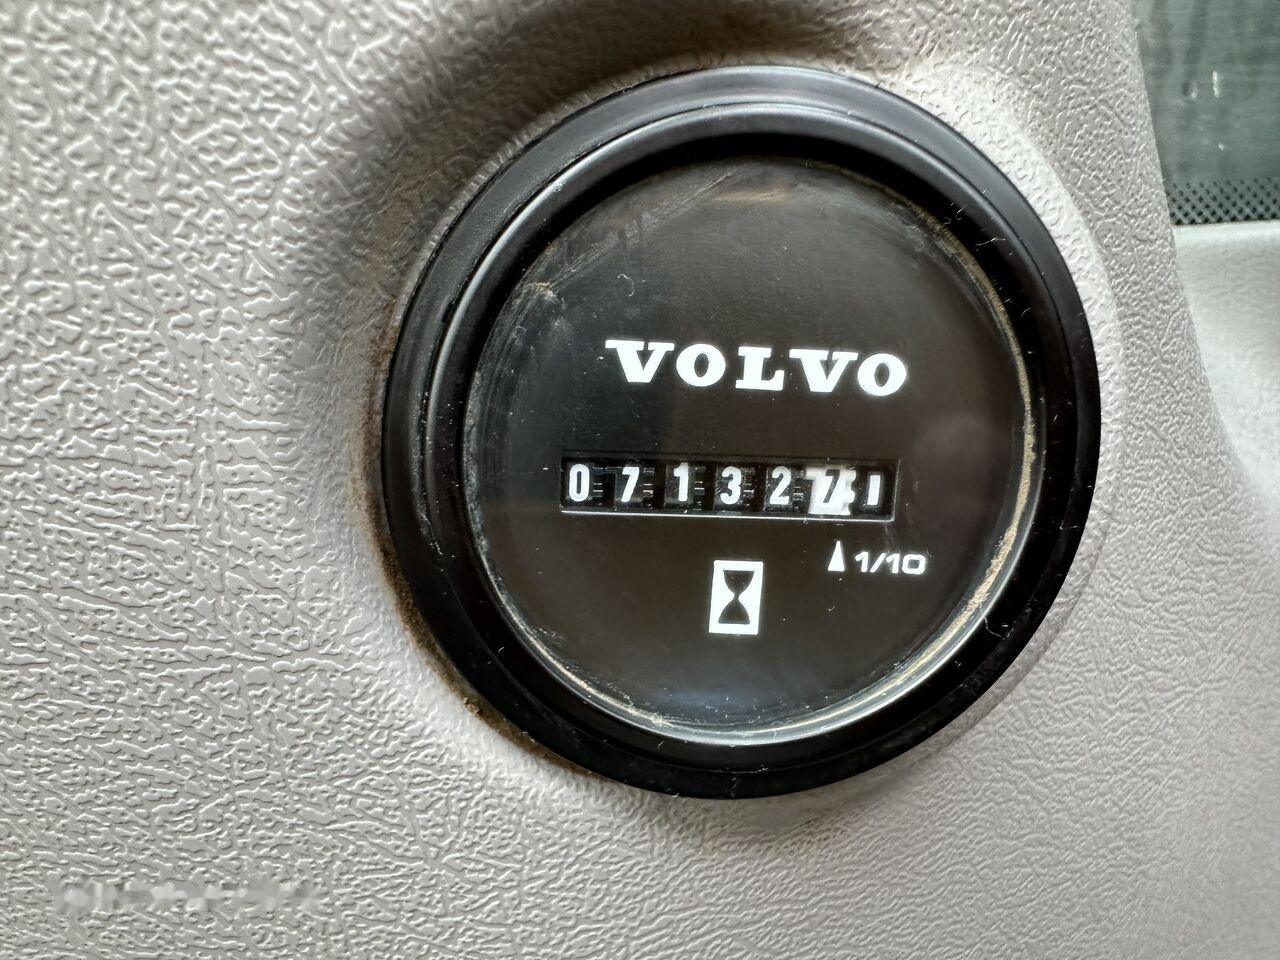 Kāpurķēžu ekskavators Volvo EC 140 EL: foto 14